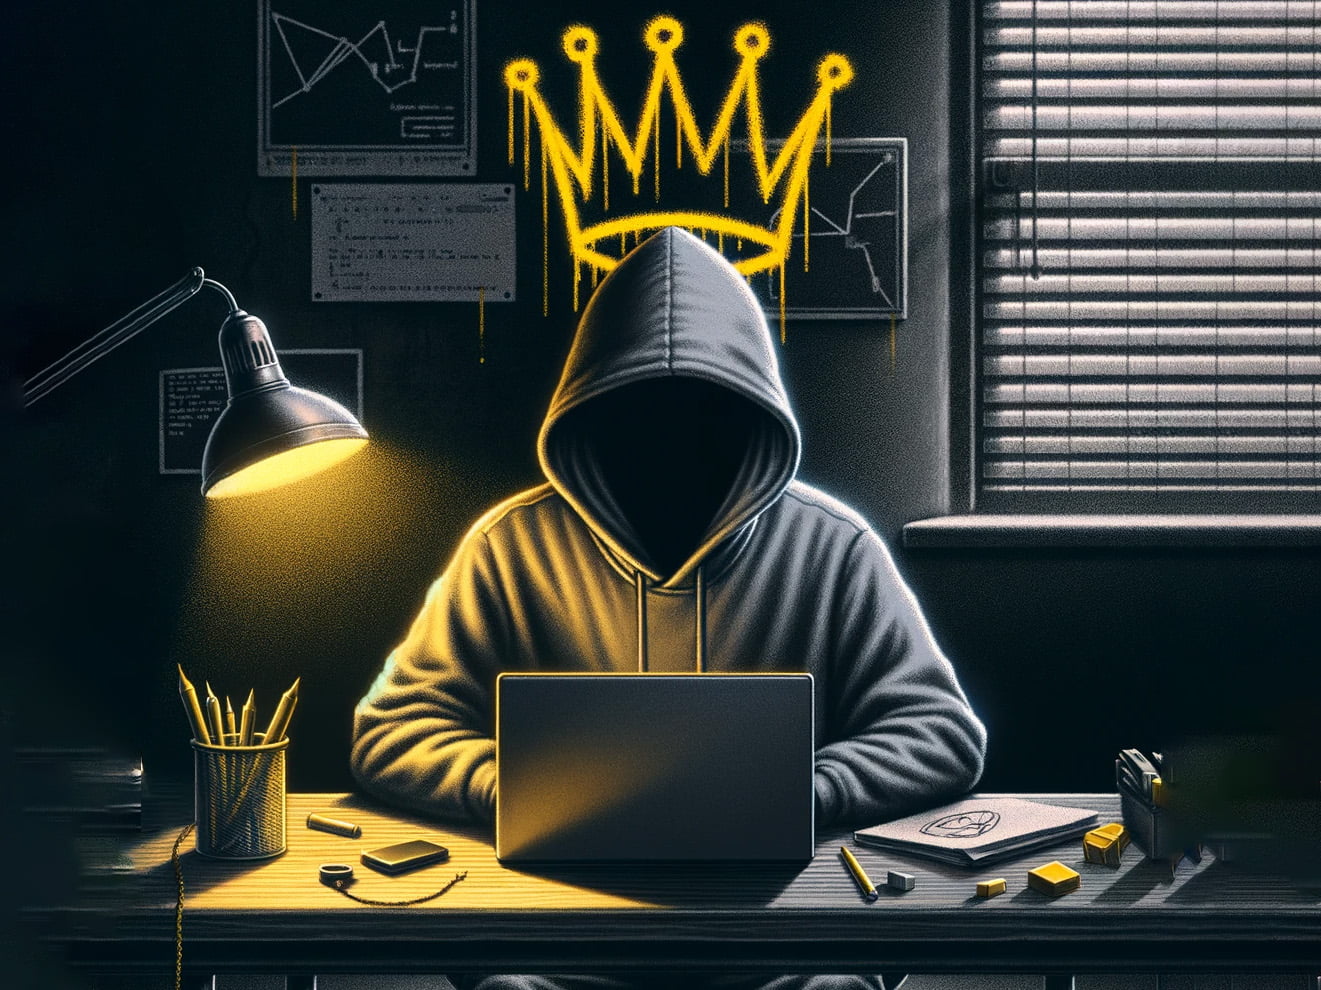 Haker w kapturze pracujący nad ransomware na laptopie w zaciemnionym pomieszczeniu z widocznymi na ścianie wykresami i notatkami, nad nim korona graffiti.